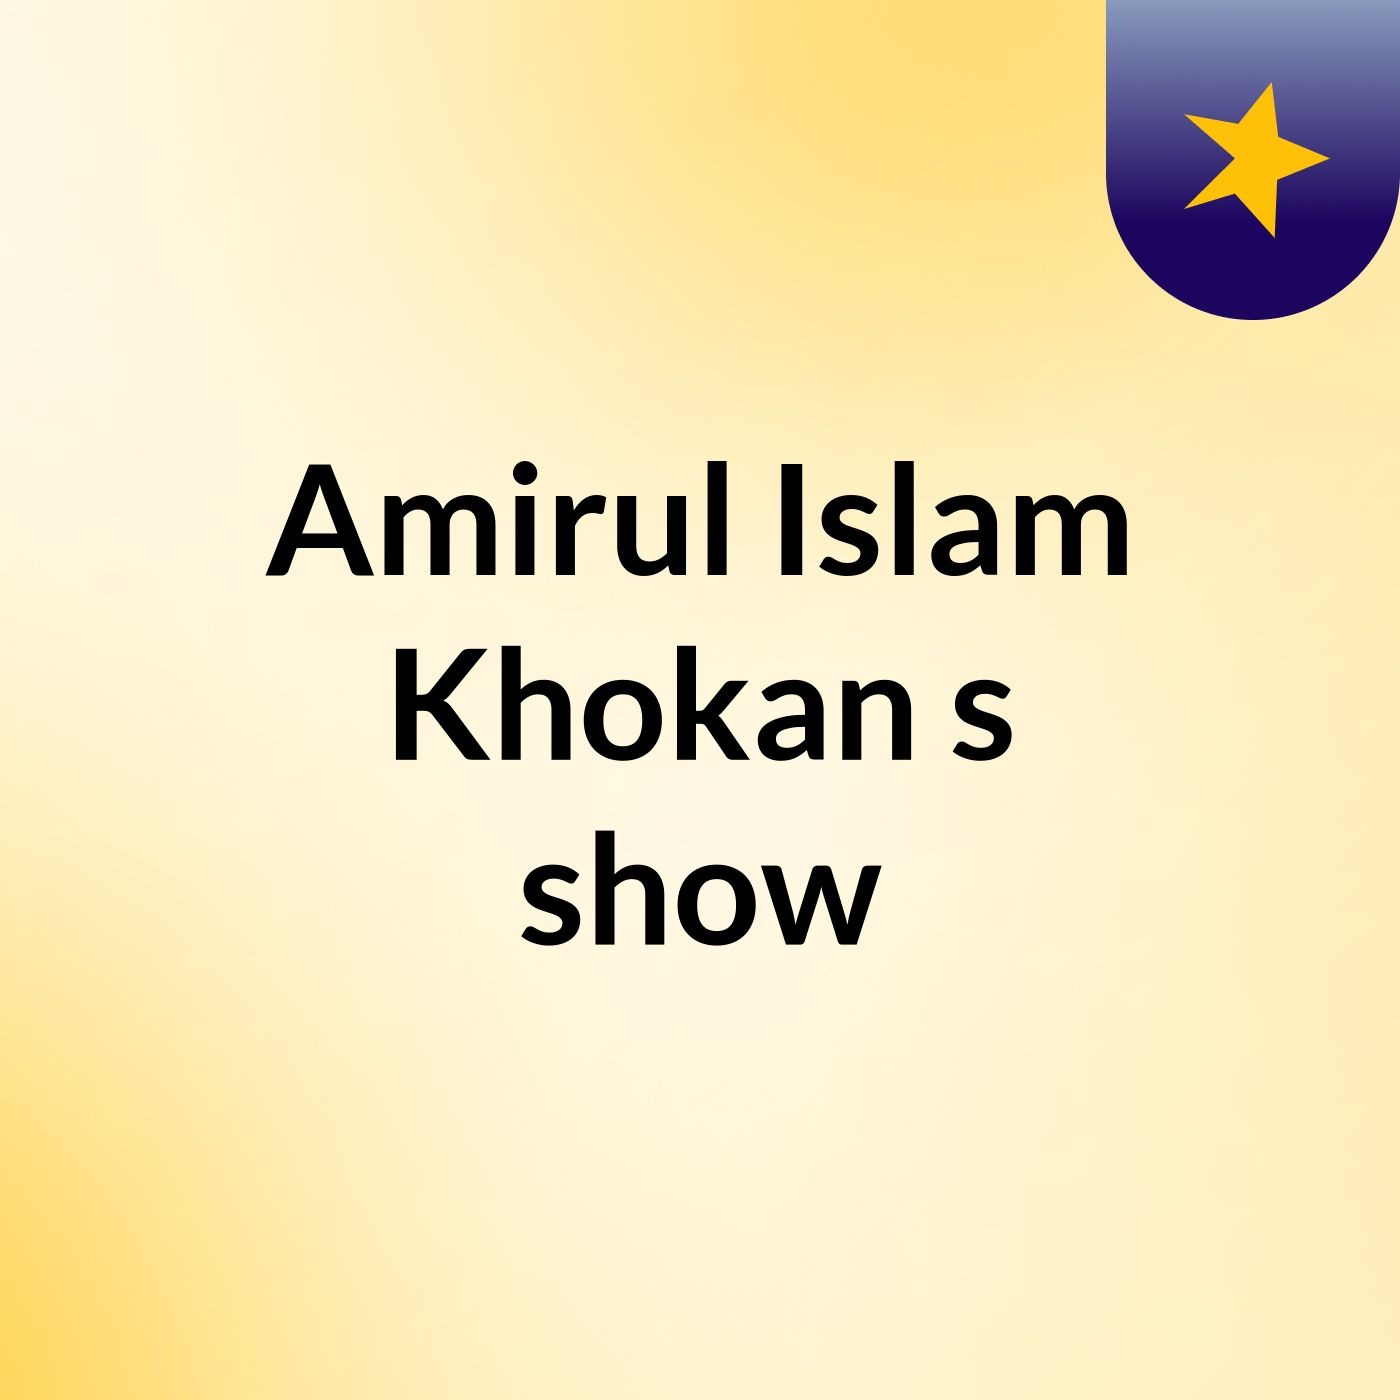 Episode 4 - Amirul Islam Khokan's show